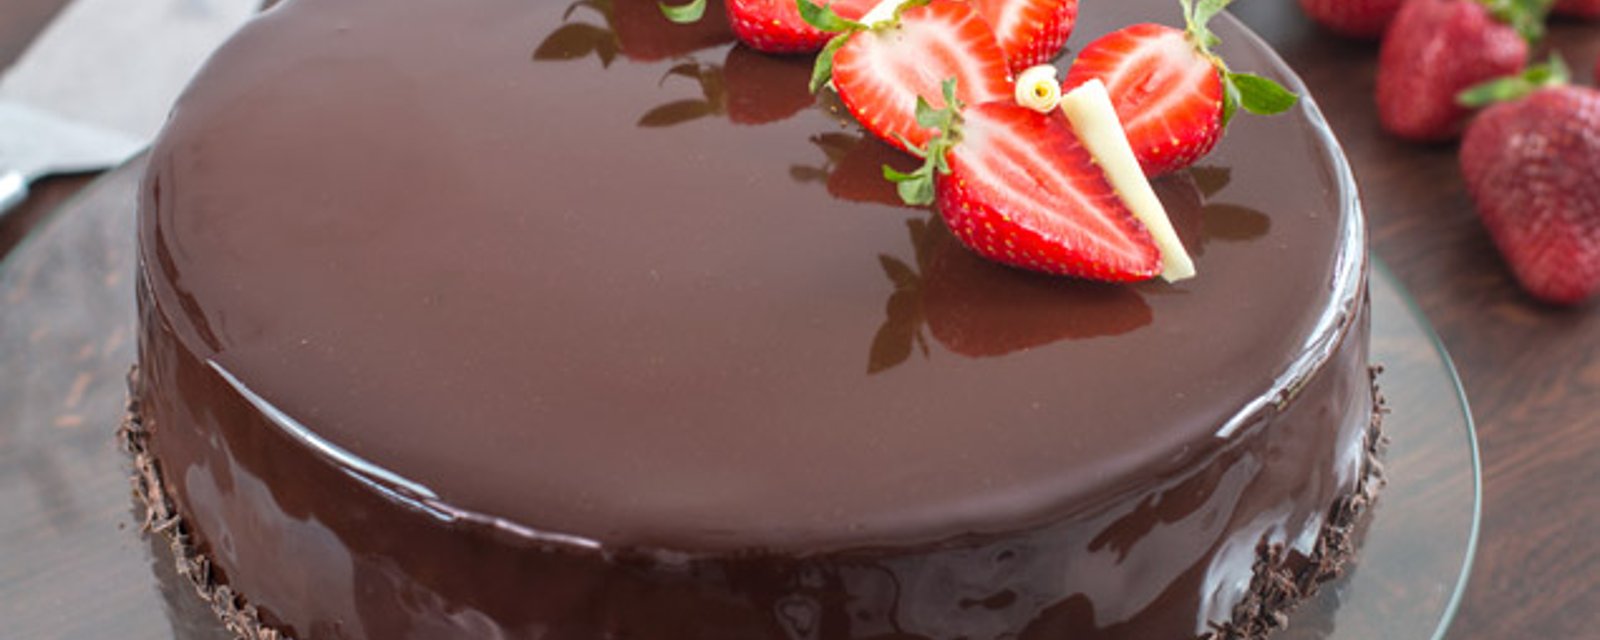 Gâteau glacé fraises-choco, un délice sucré qu'on aime dès la première bouchée